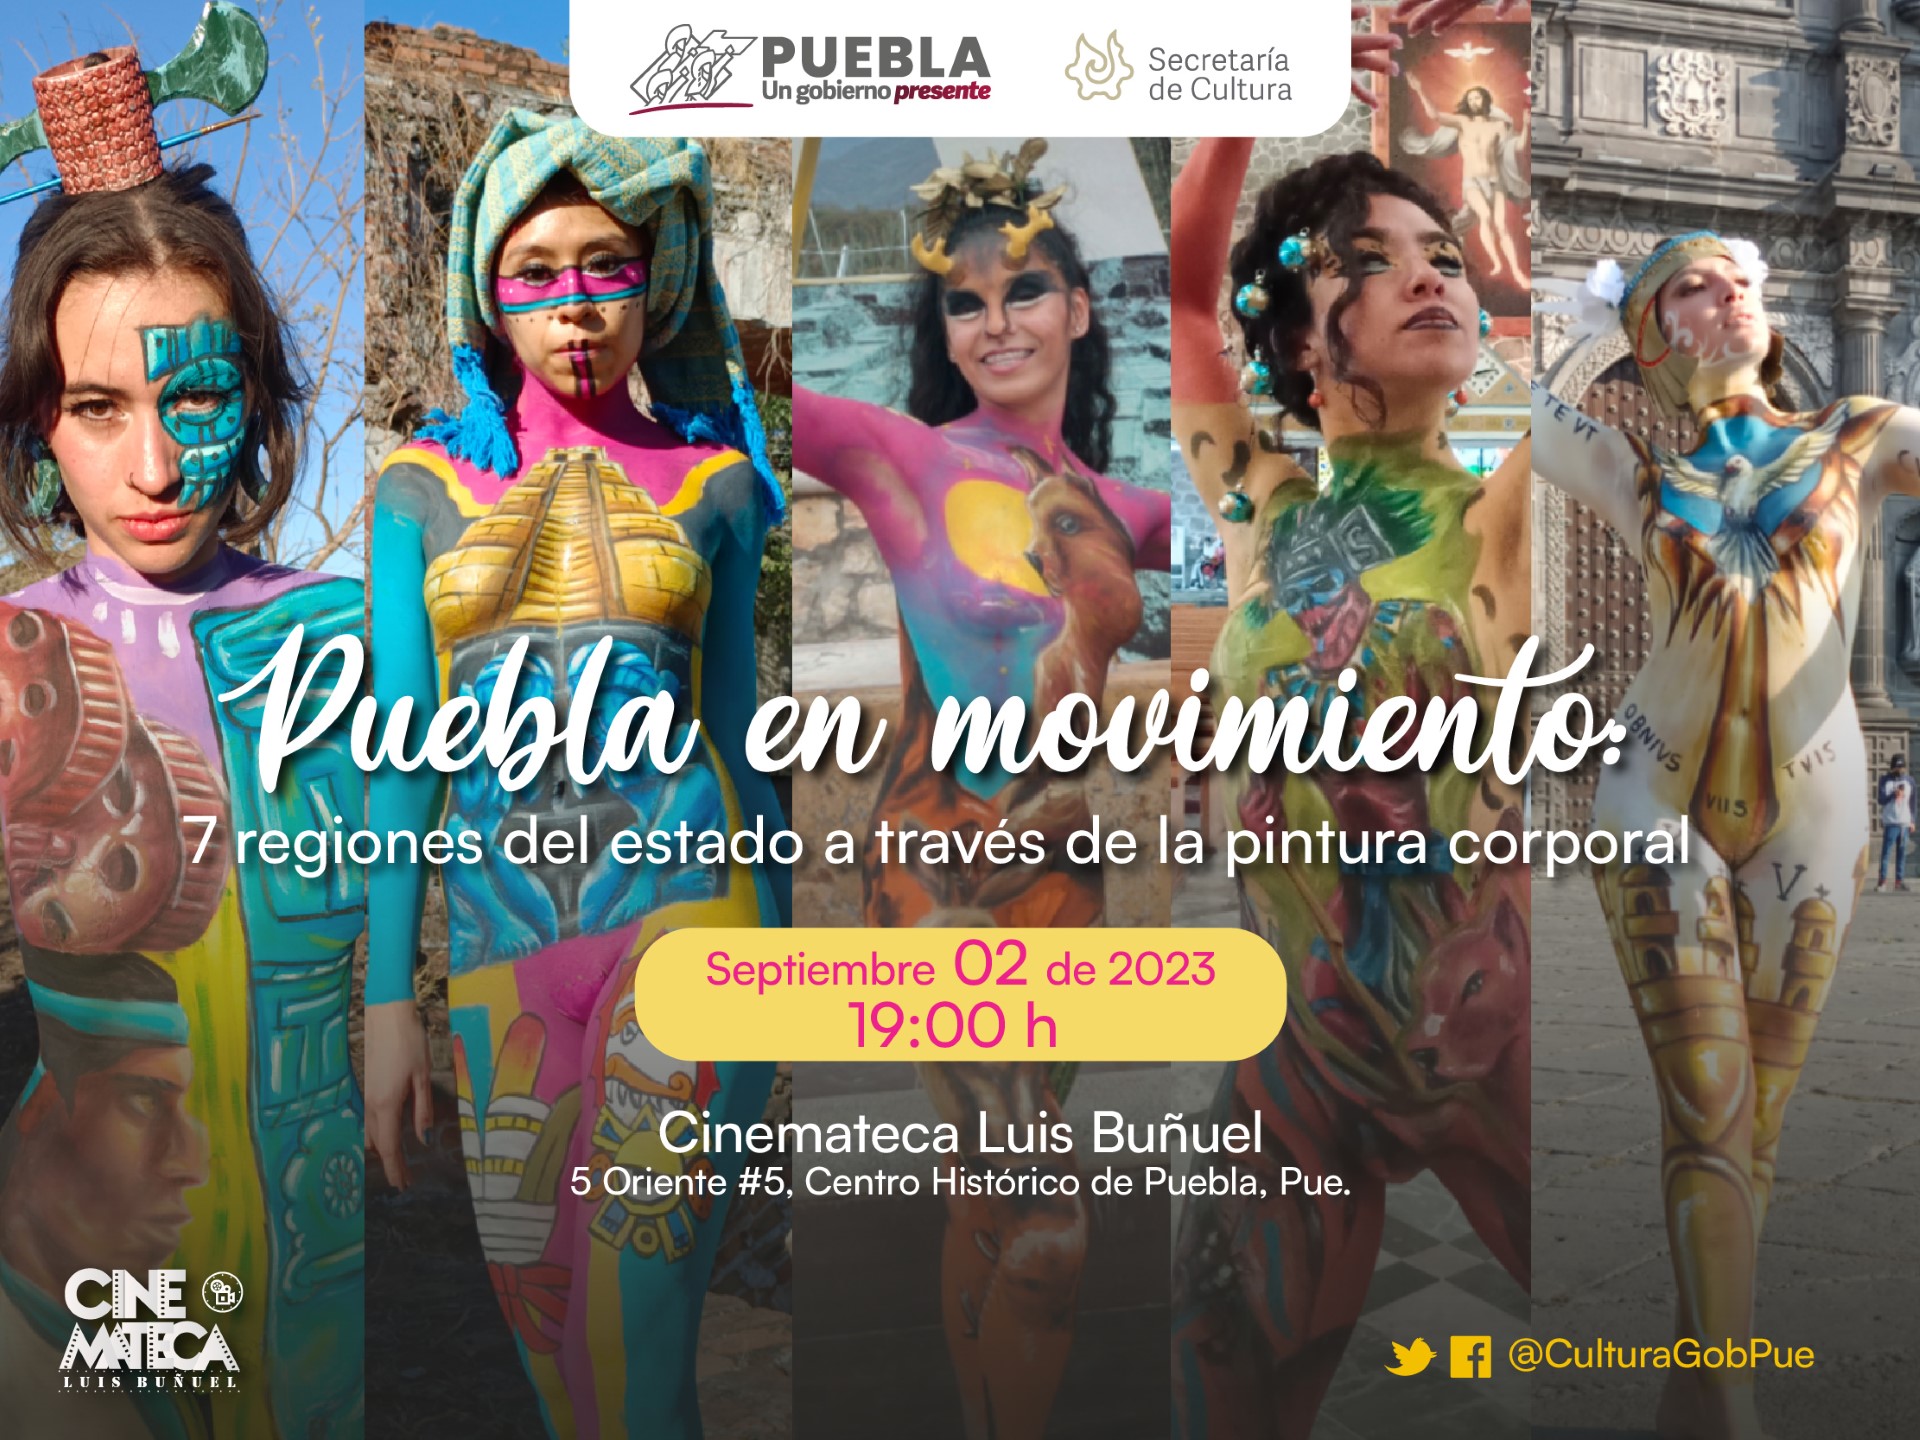 Secretaría de Cultura presentará proyecto audiovisual de pintura corporal “Puebla en Movimiento”